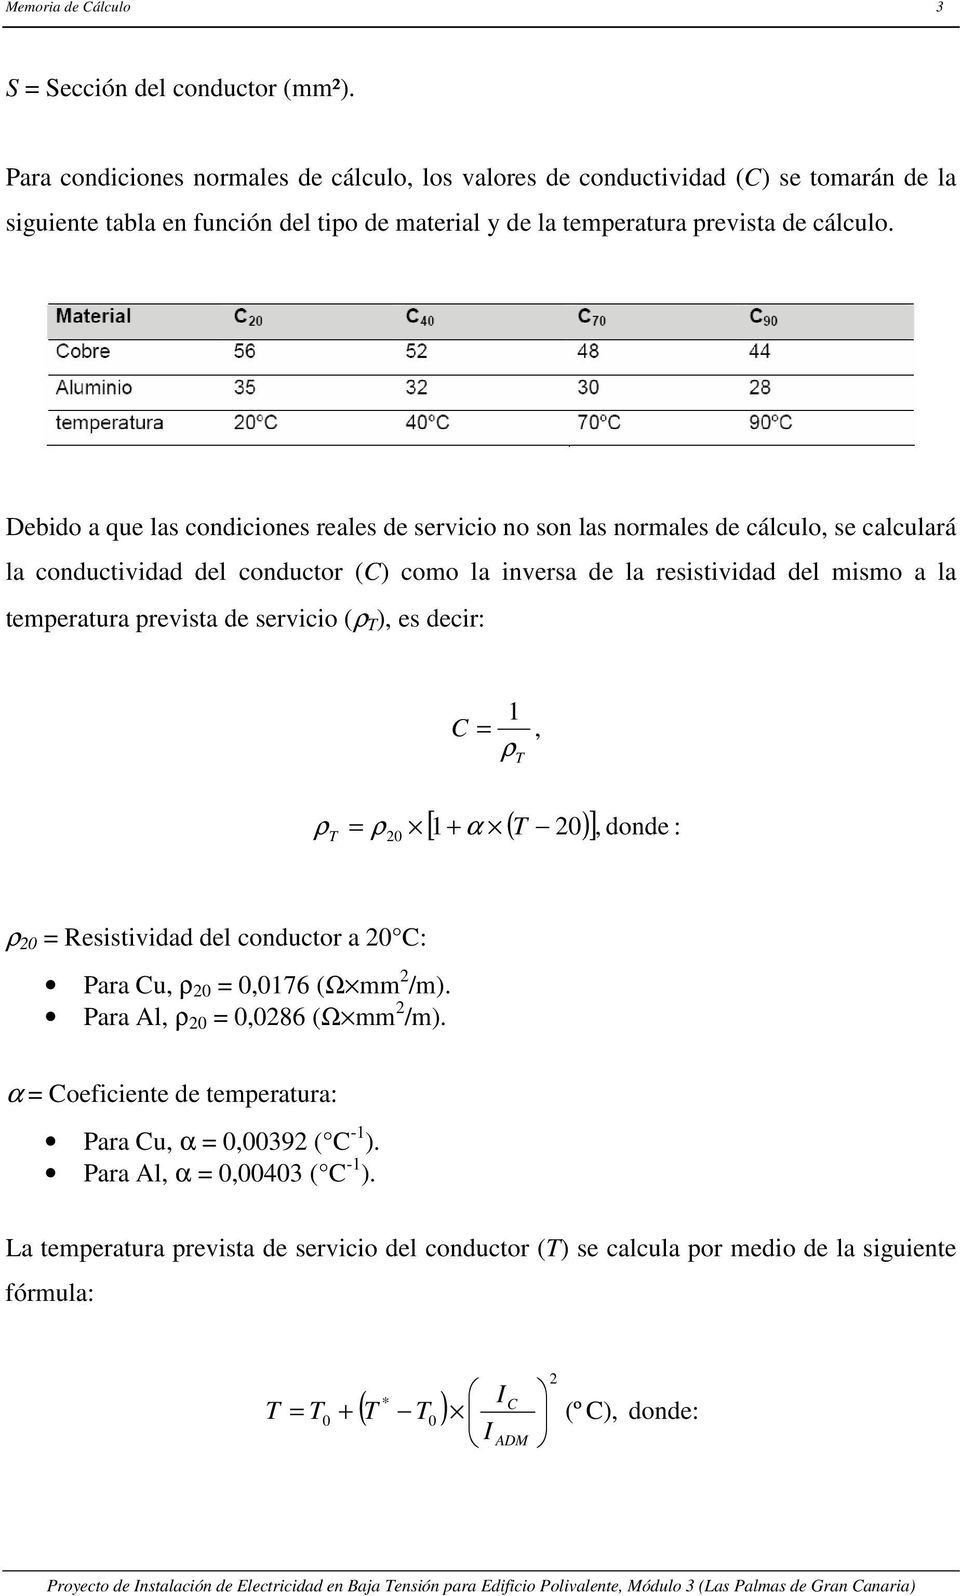 Debido a que las condiciones reales de servicio no son las normales de cálculo, se calculará la conductividad del conductor (C) como la inversa de la resistividad del mismo a la temperatura prevista